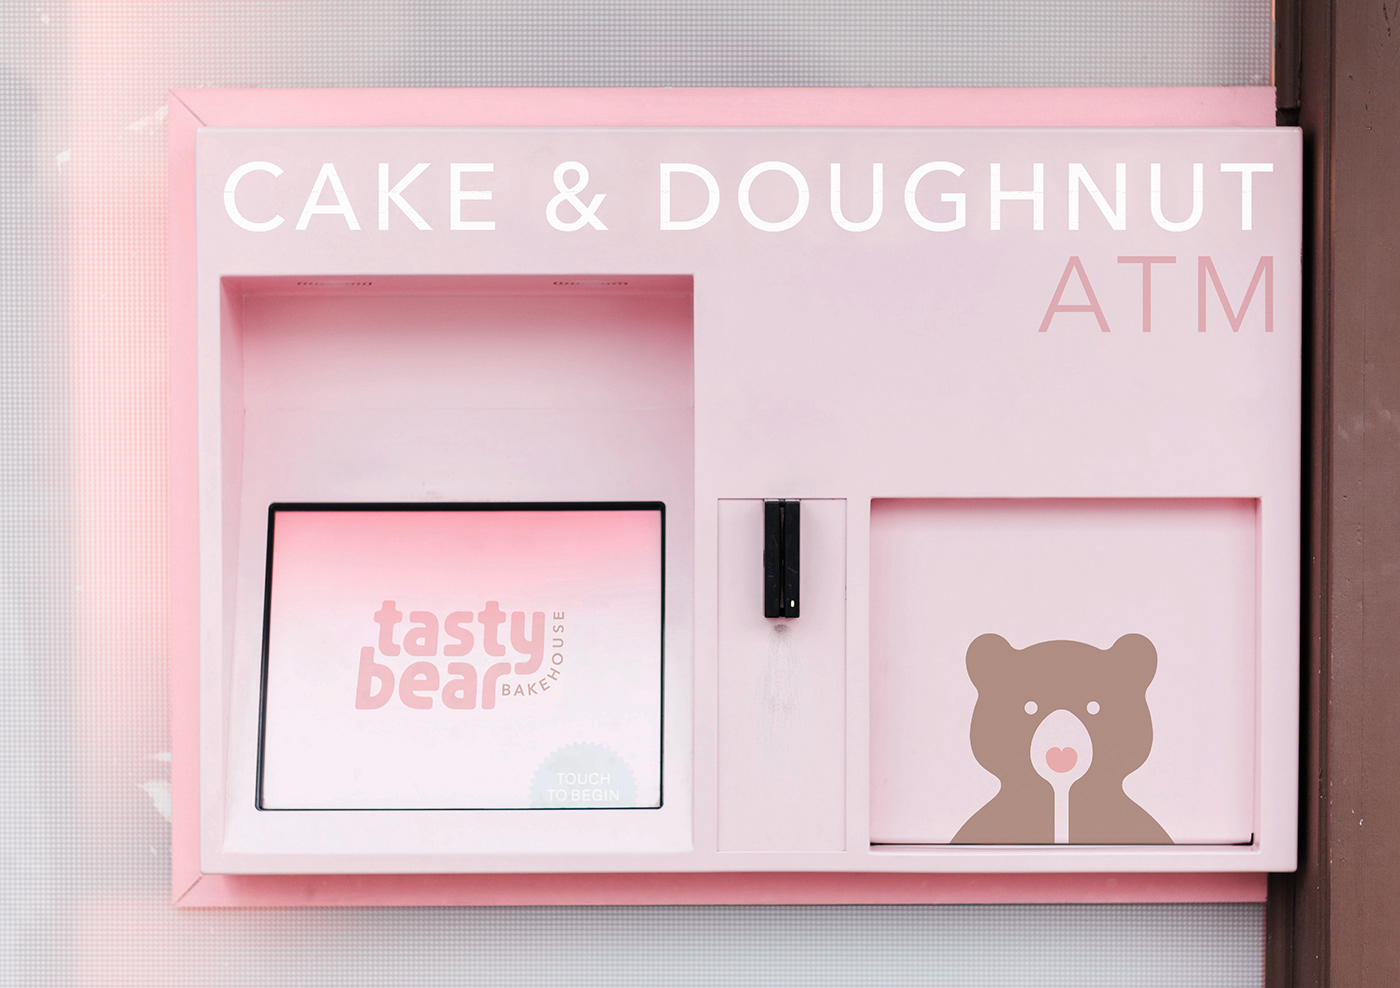 Cake & Doughnut ATM Tasty Bear Bakehouse